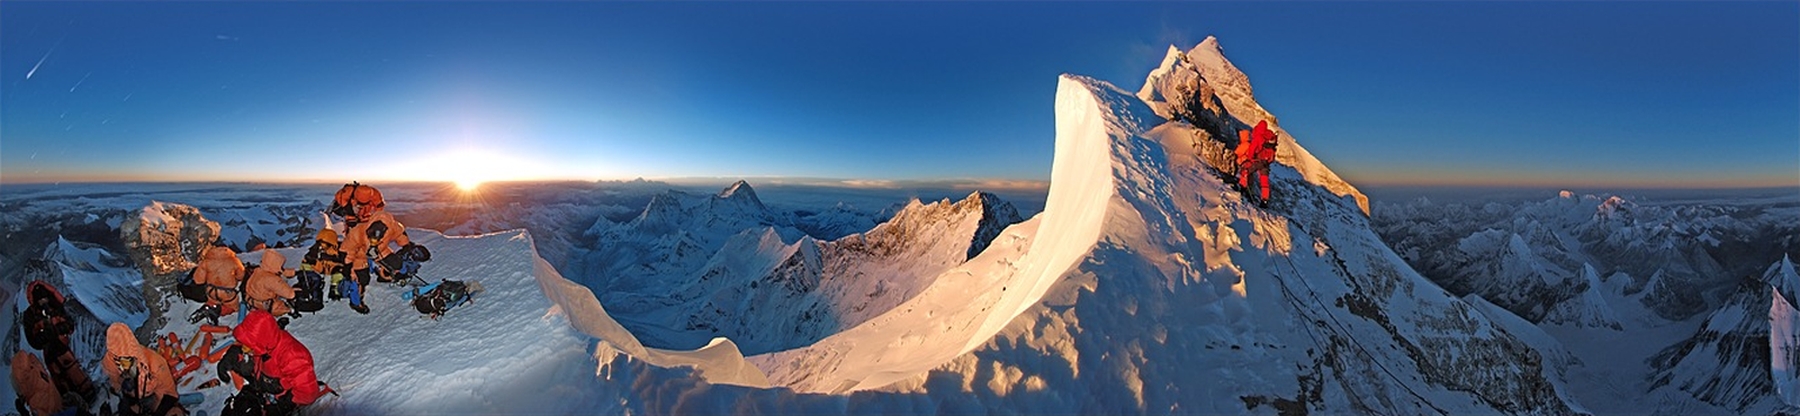 Круговая панорама Гималаев с высоты 8500 м с Северного гребня Эвереста на восходе солнца...Photo by Kyraoka Hiroyuki